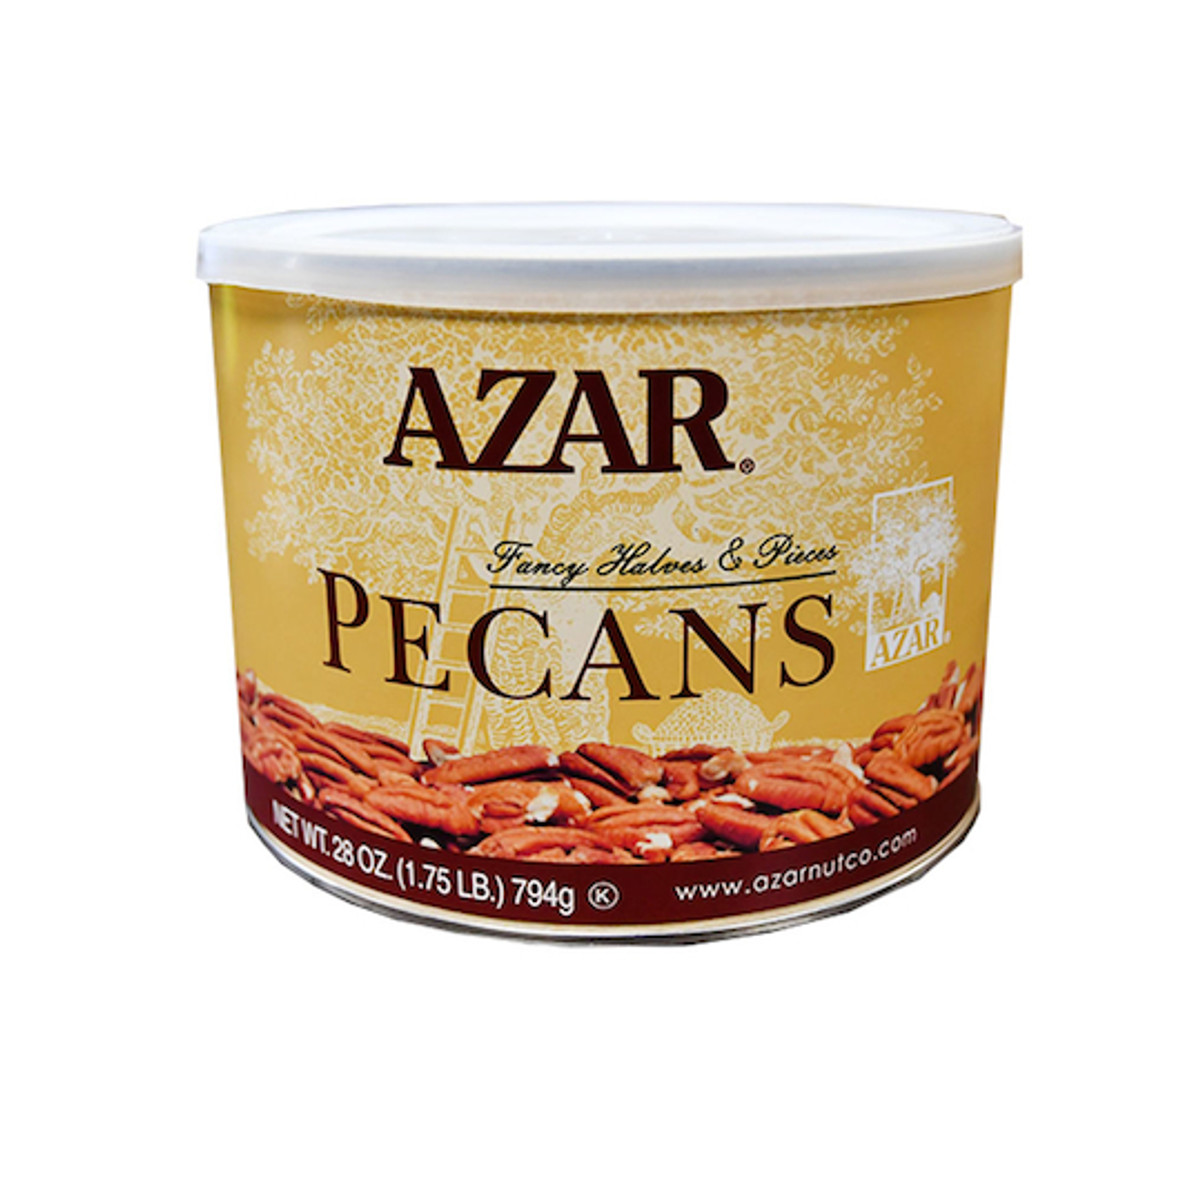 Azar Fancy Pecan Halves & Pieces, 1.75 Pounds, 6 Per Case